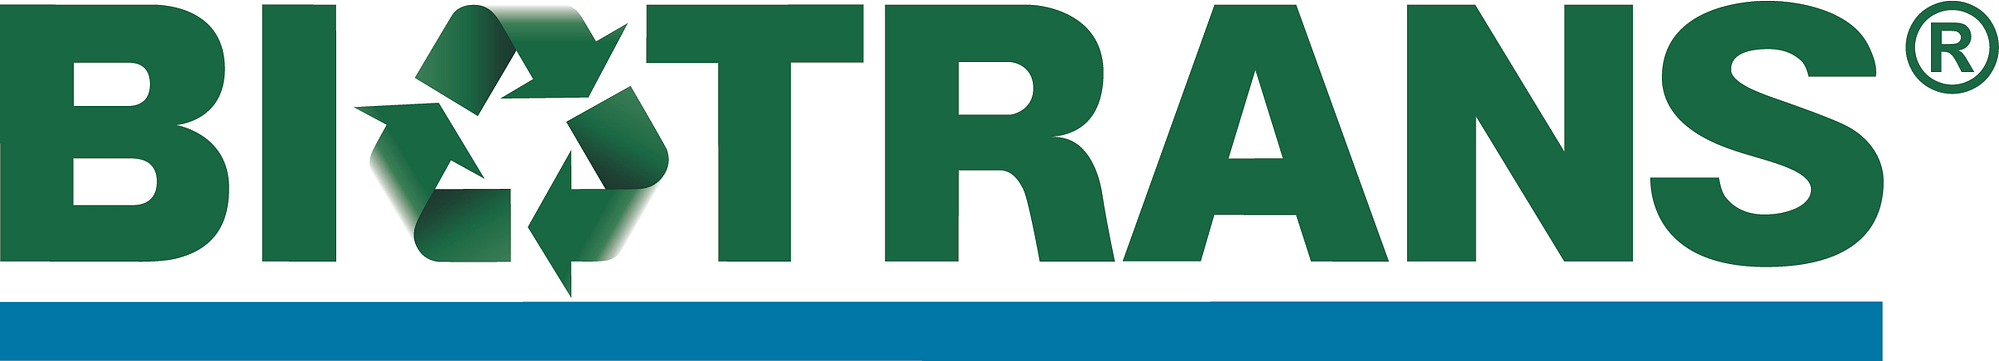 Biotrans Logo